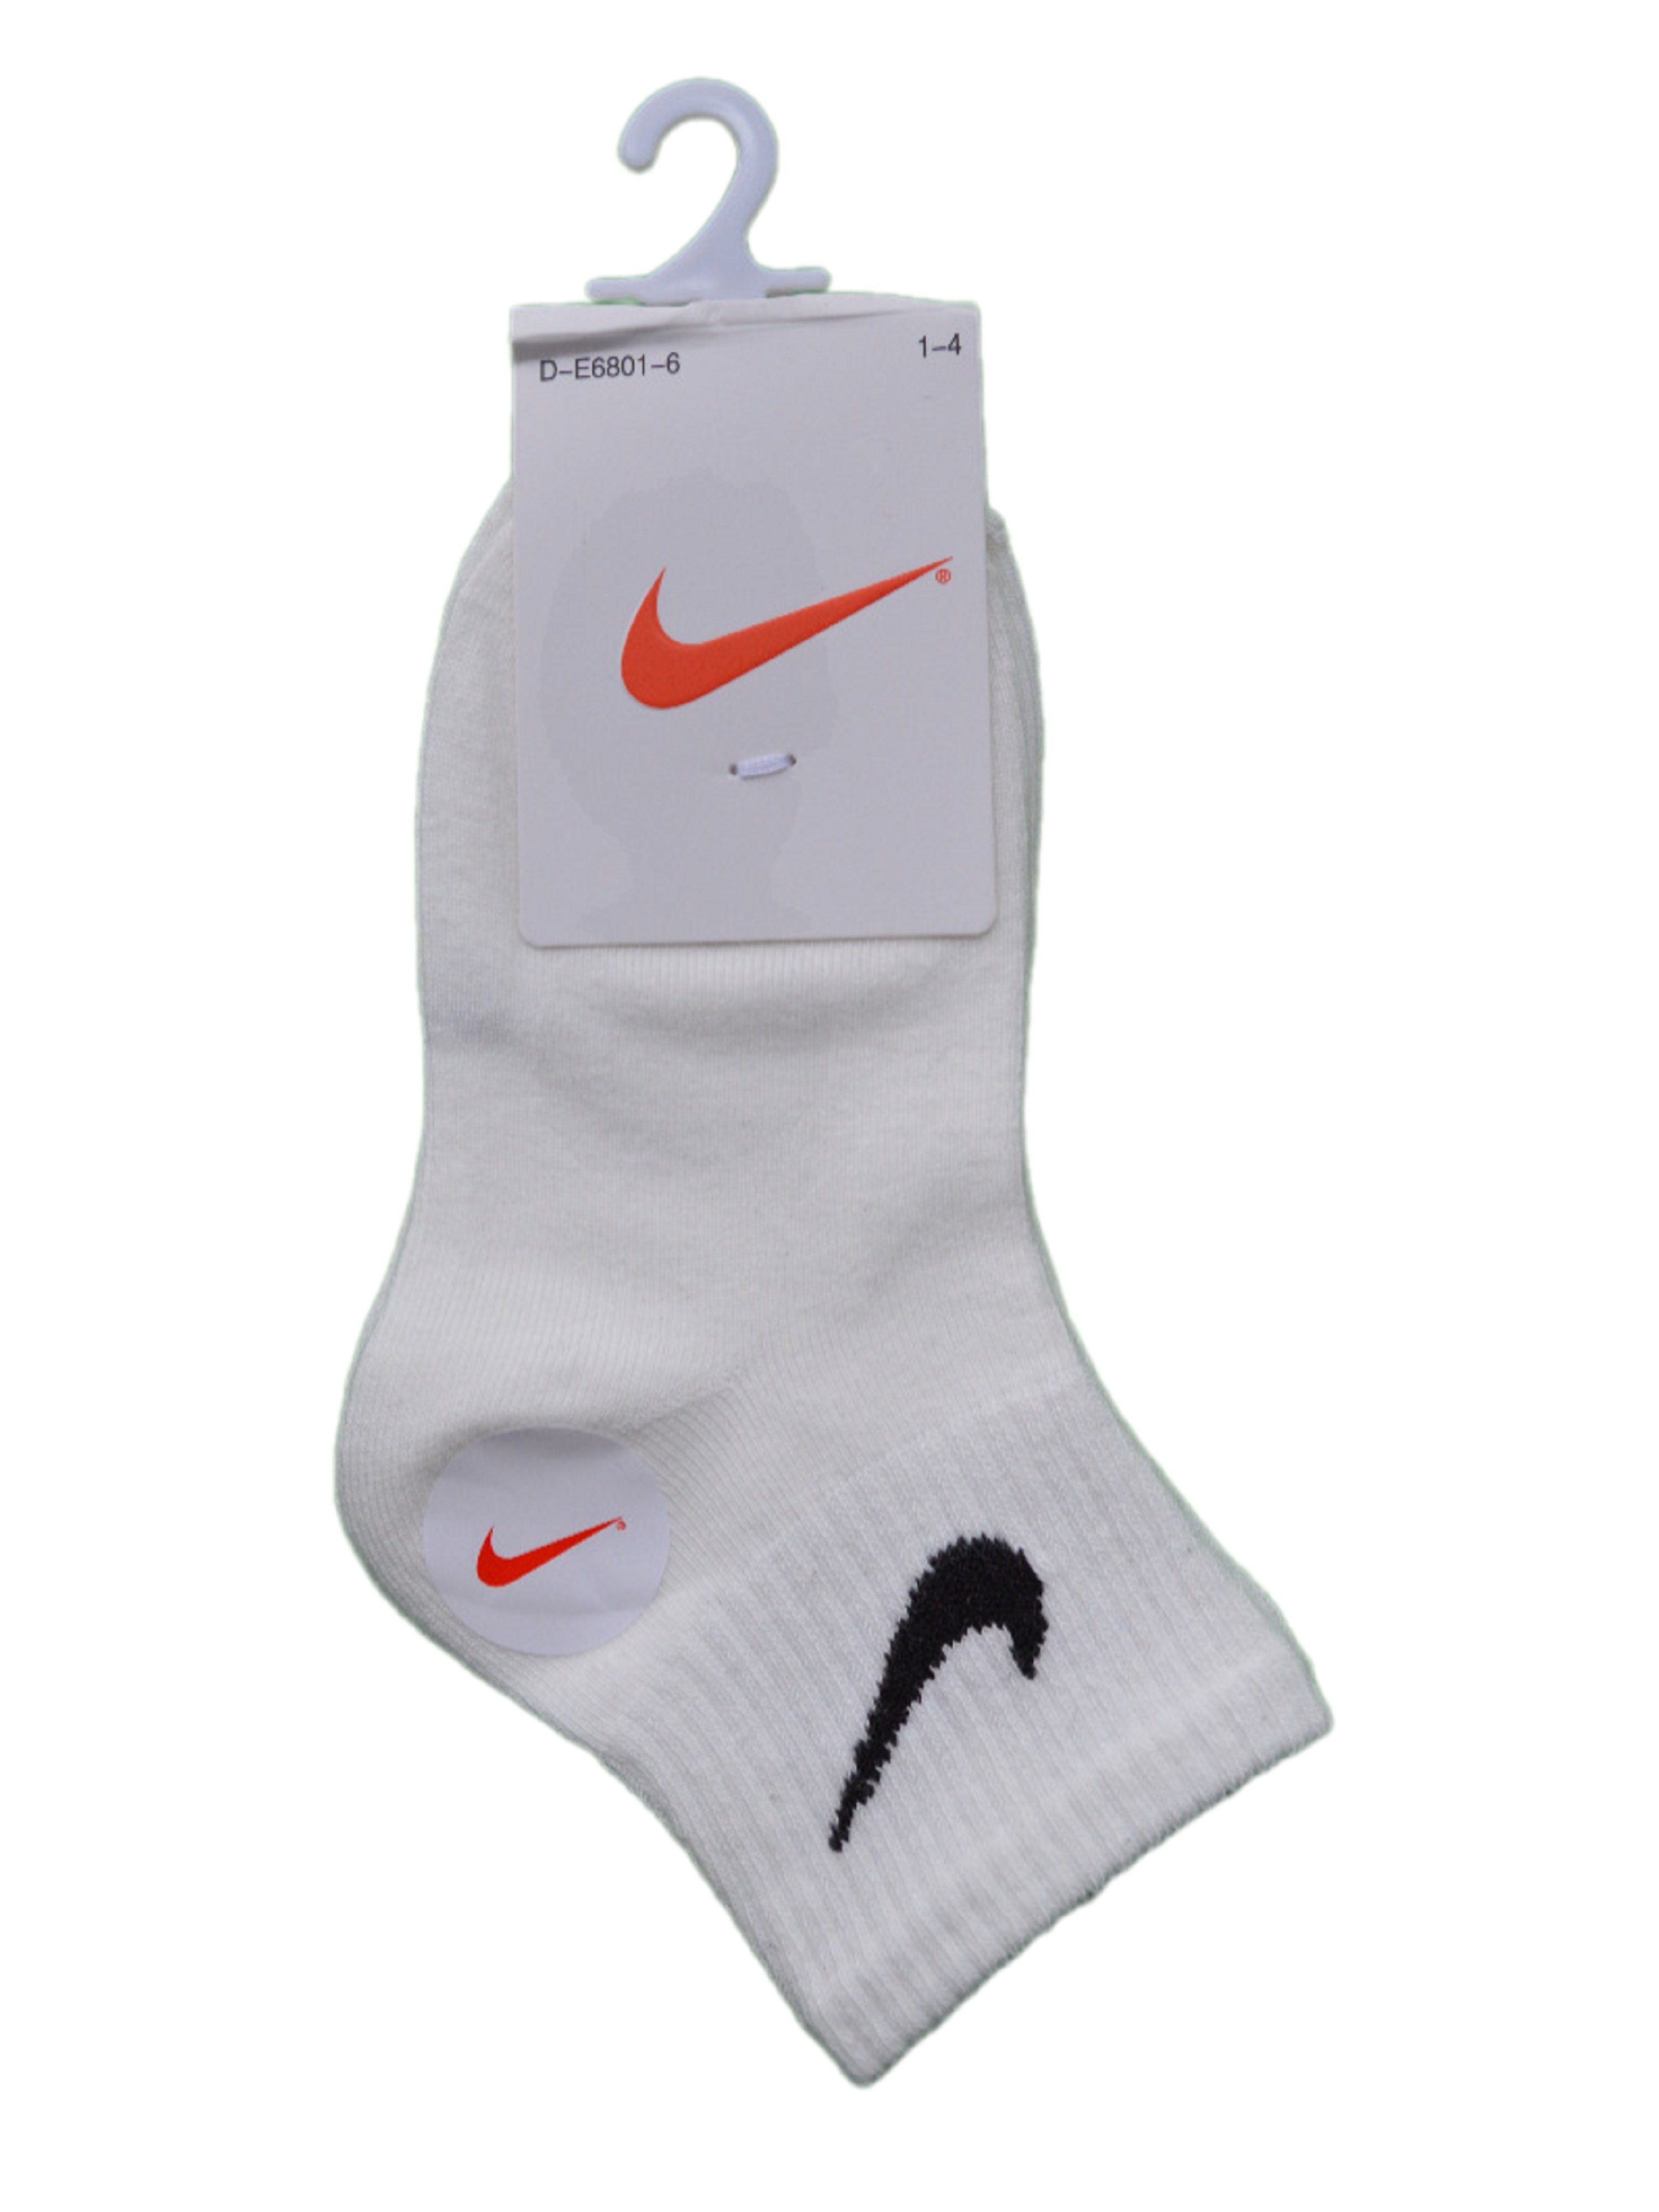 Носки детские Nike Ni-D-E6801-6, белый, 6 кроссовки детские nike star runner 3 psv